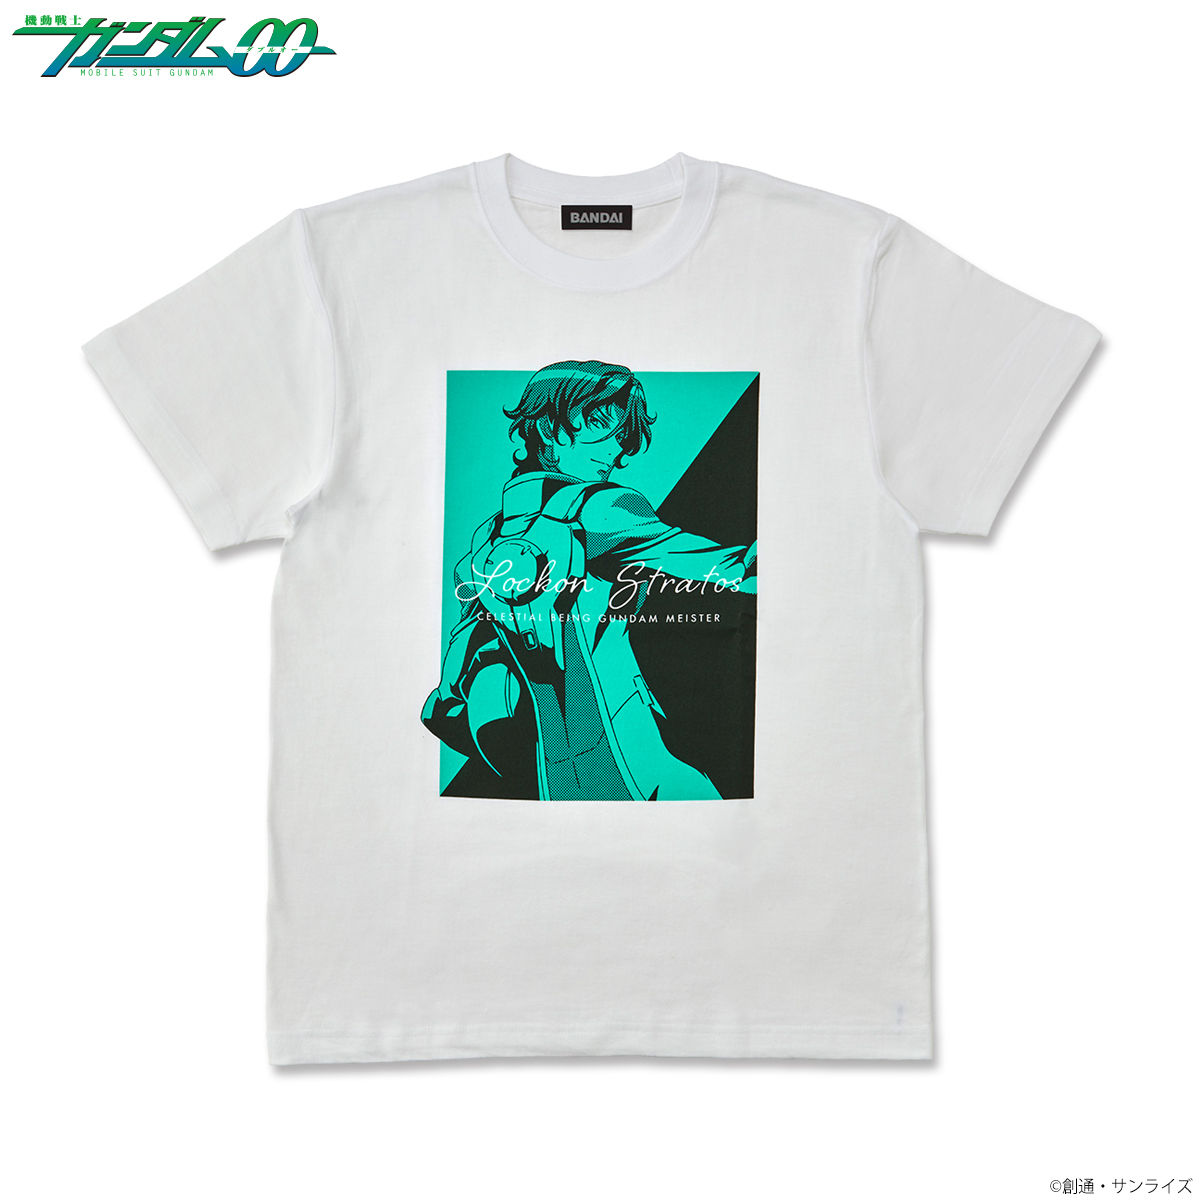 Mobile Suit Gundam 00 Bicolor-themed T-shirt